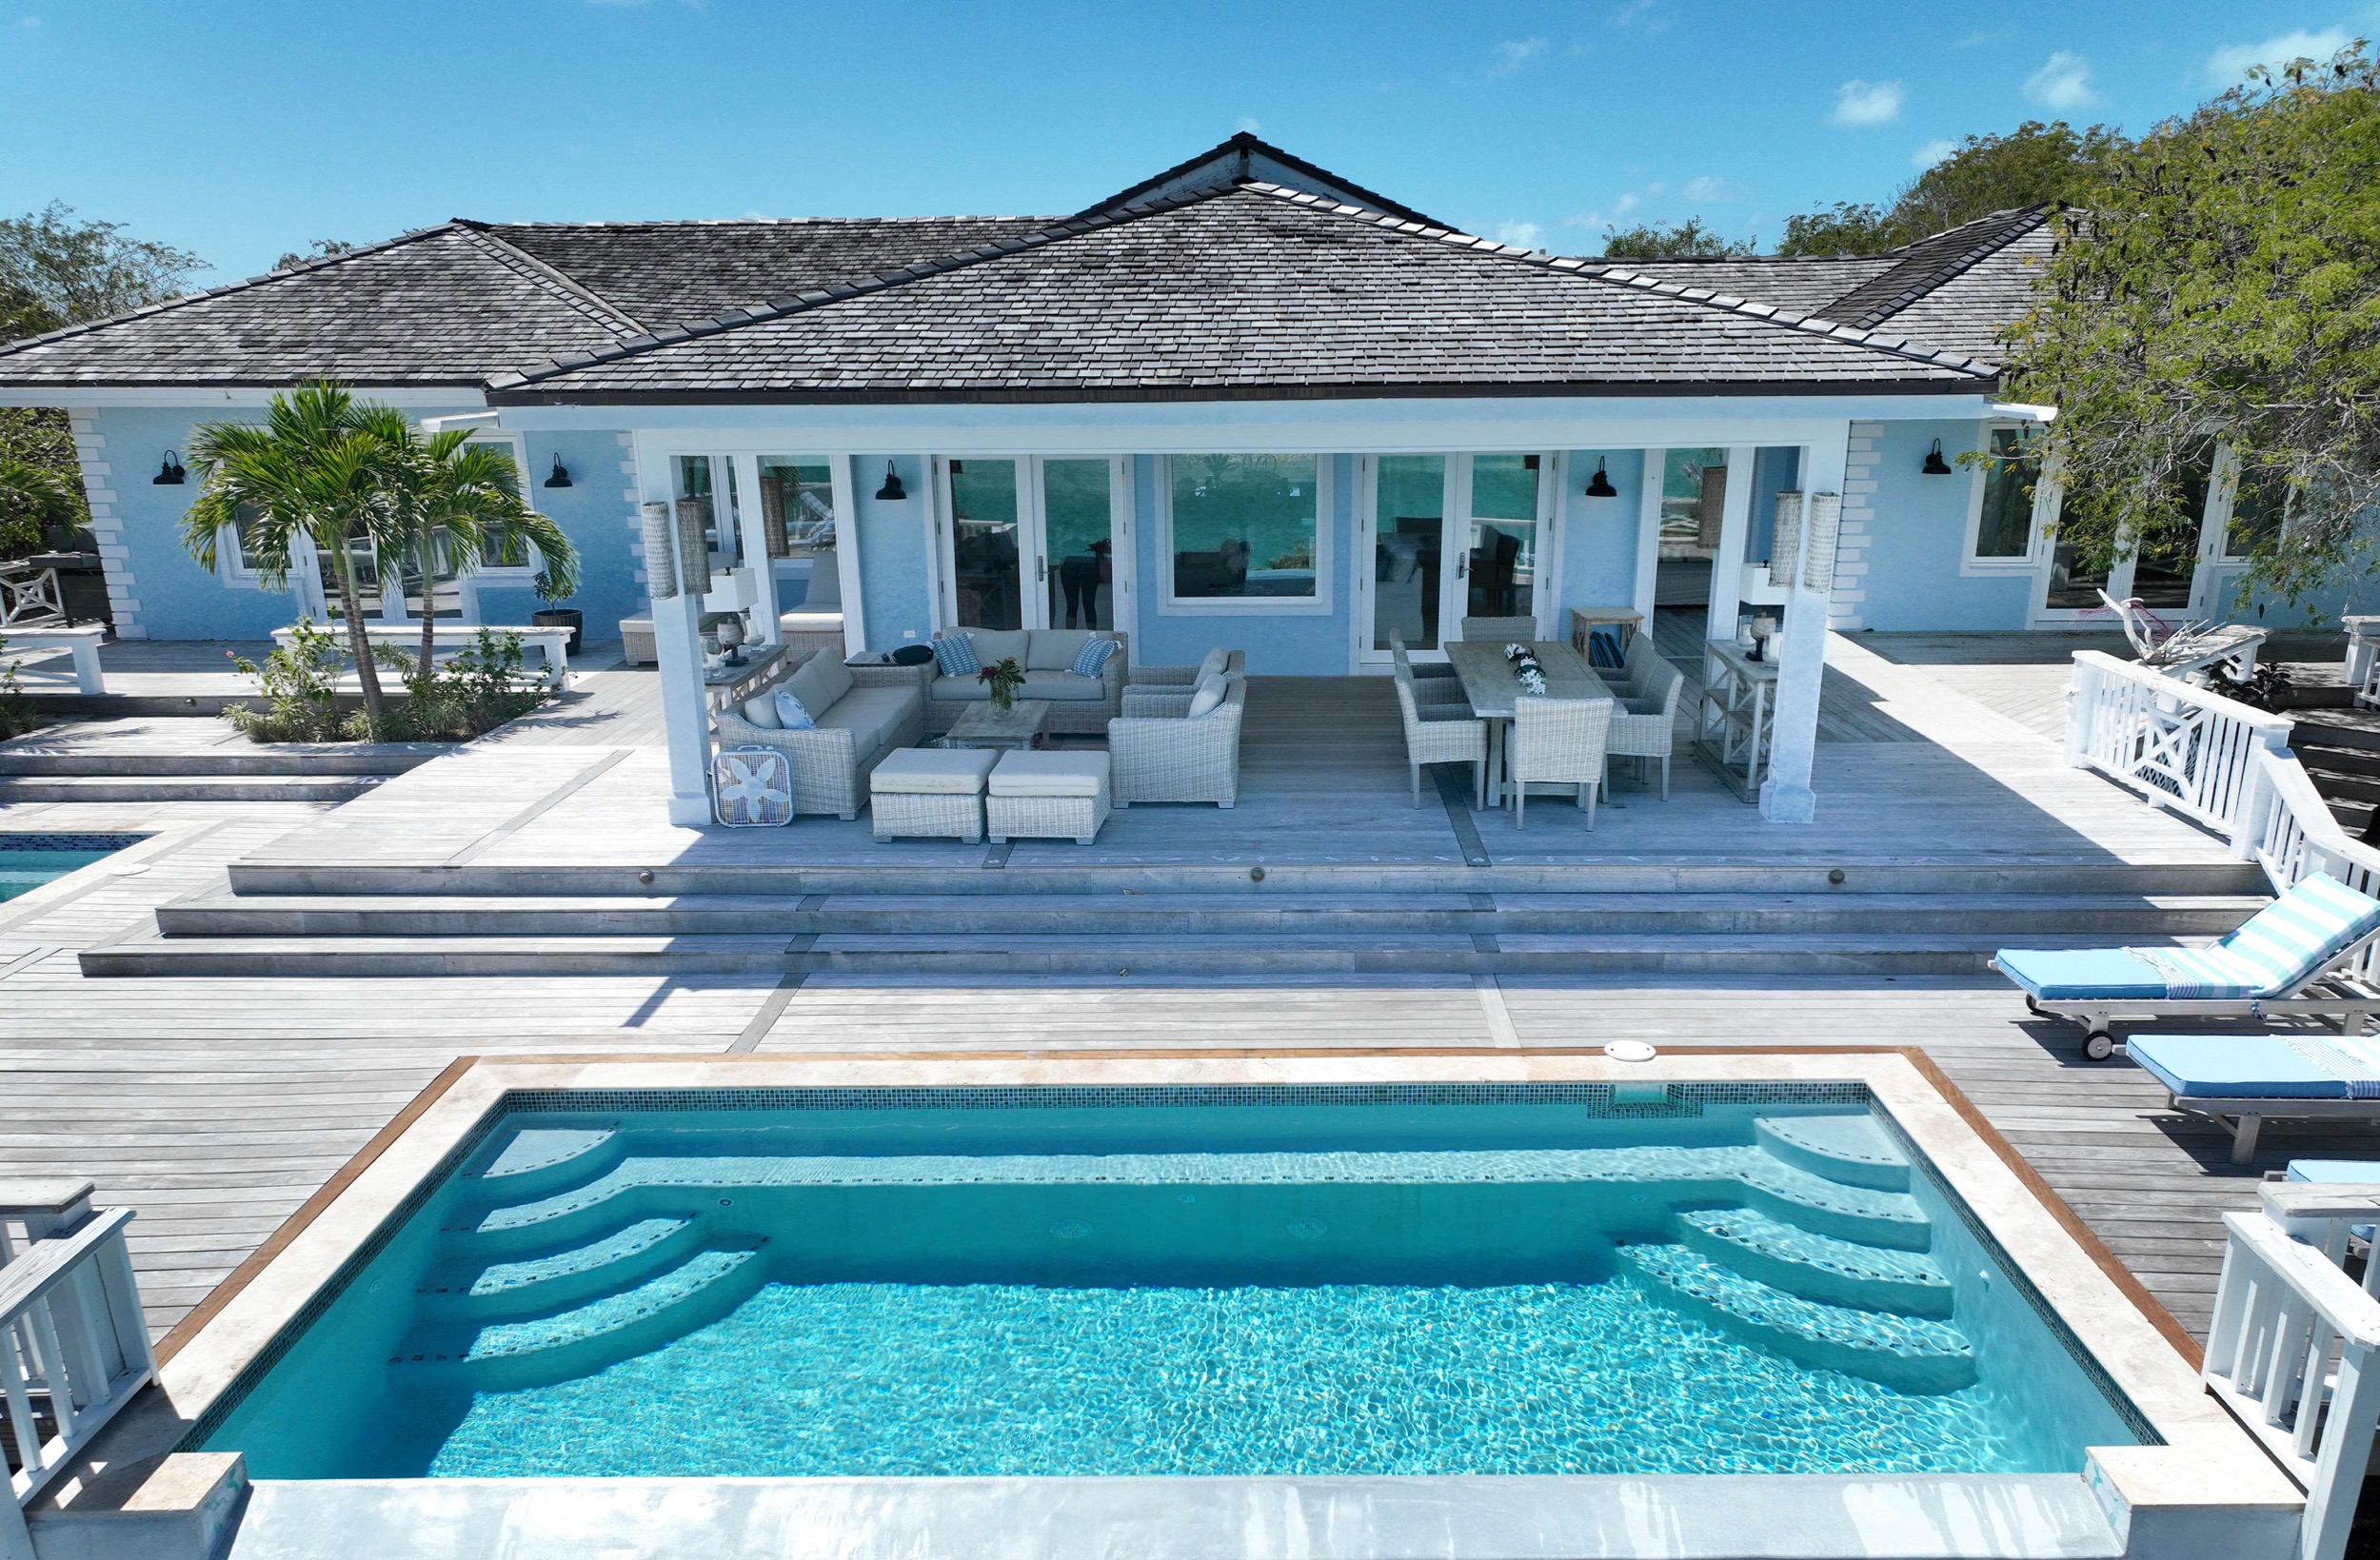 Pool and House Bahari house Great Exuma Bahamas